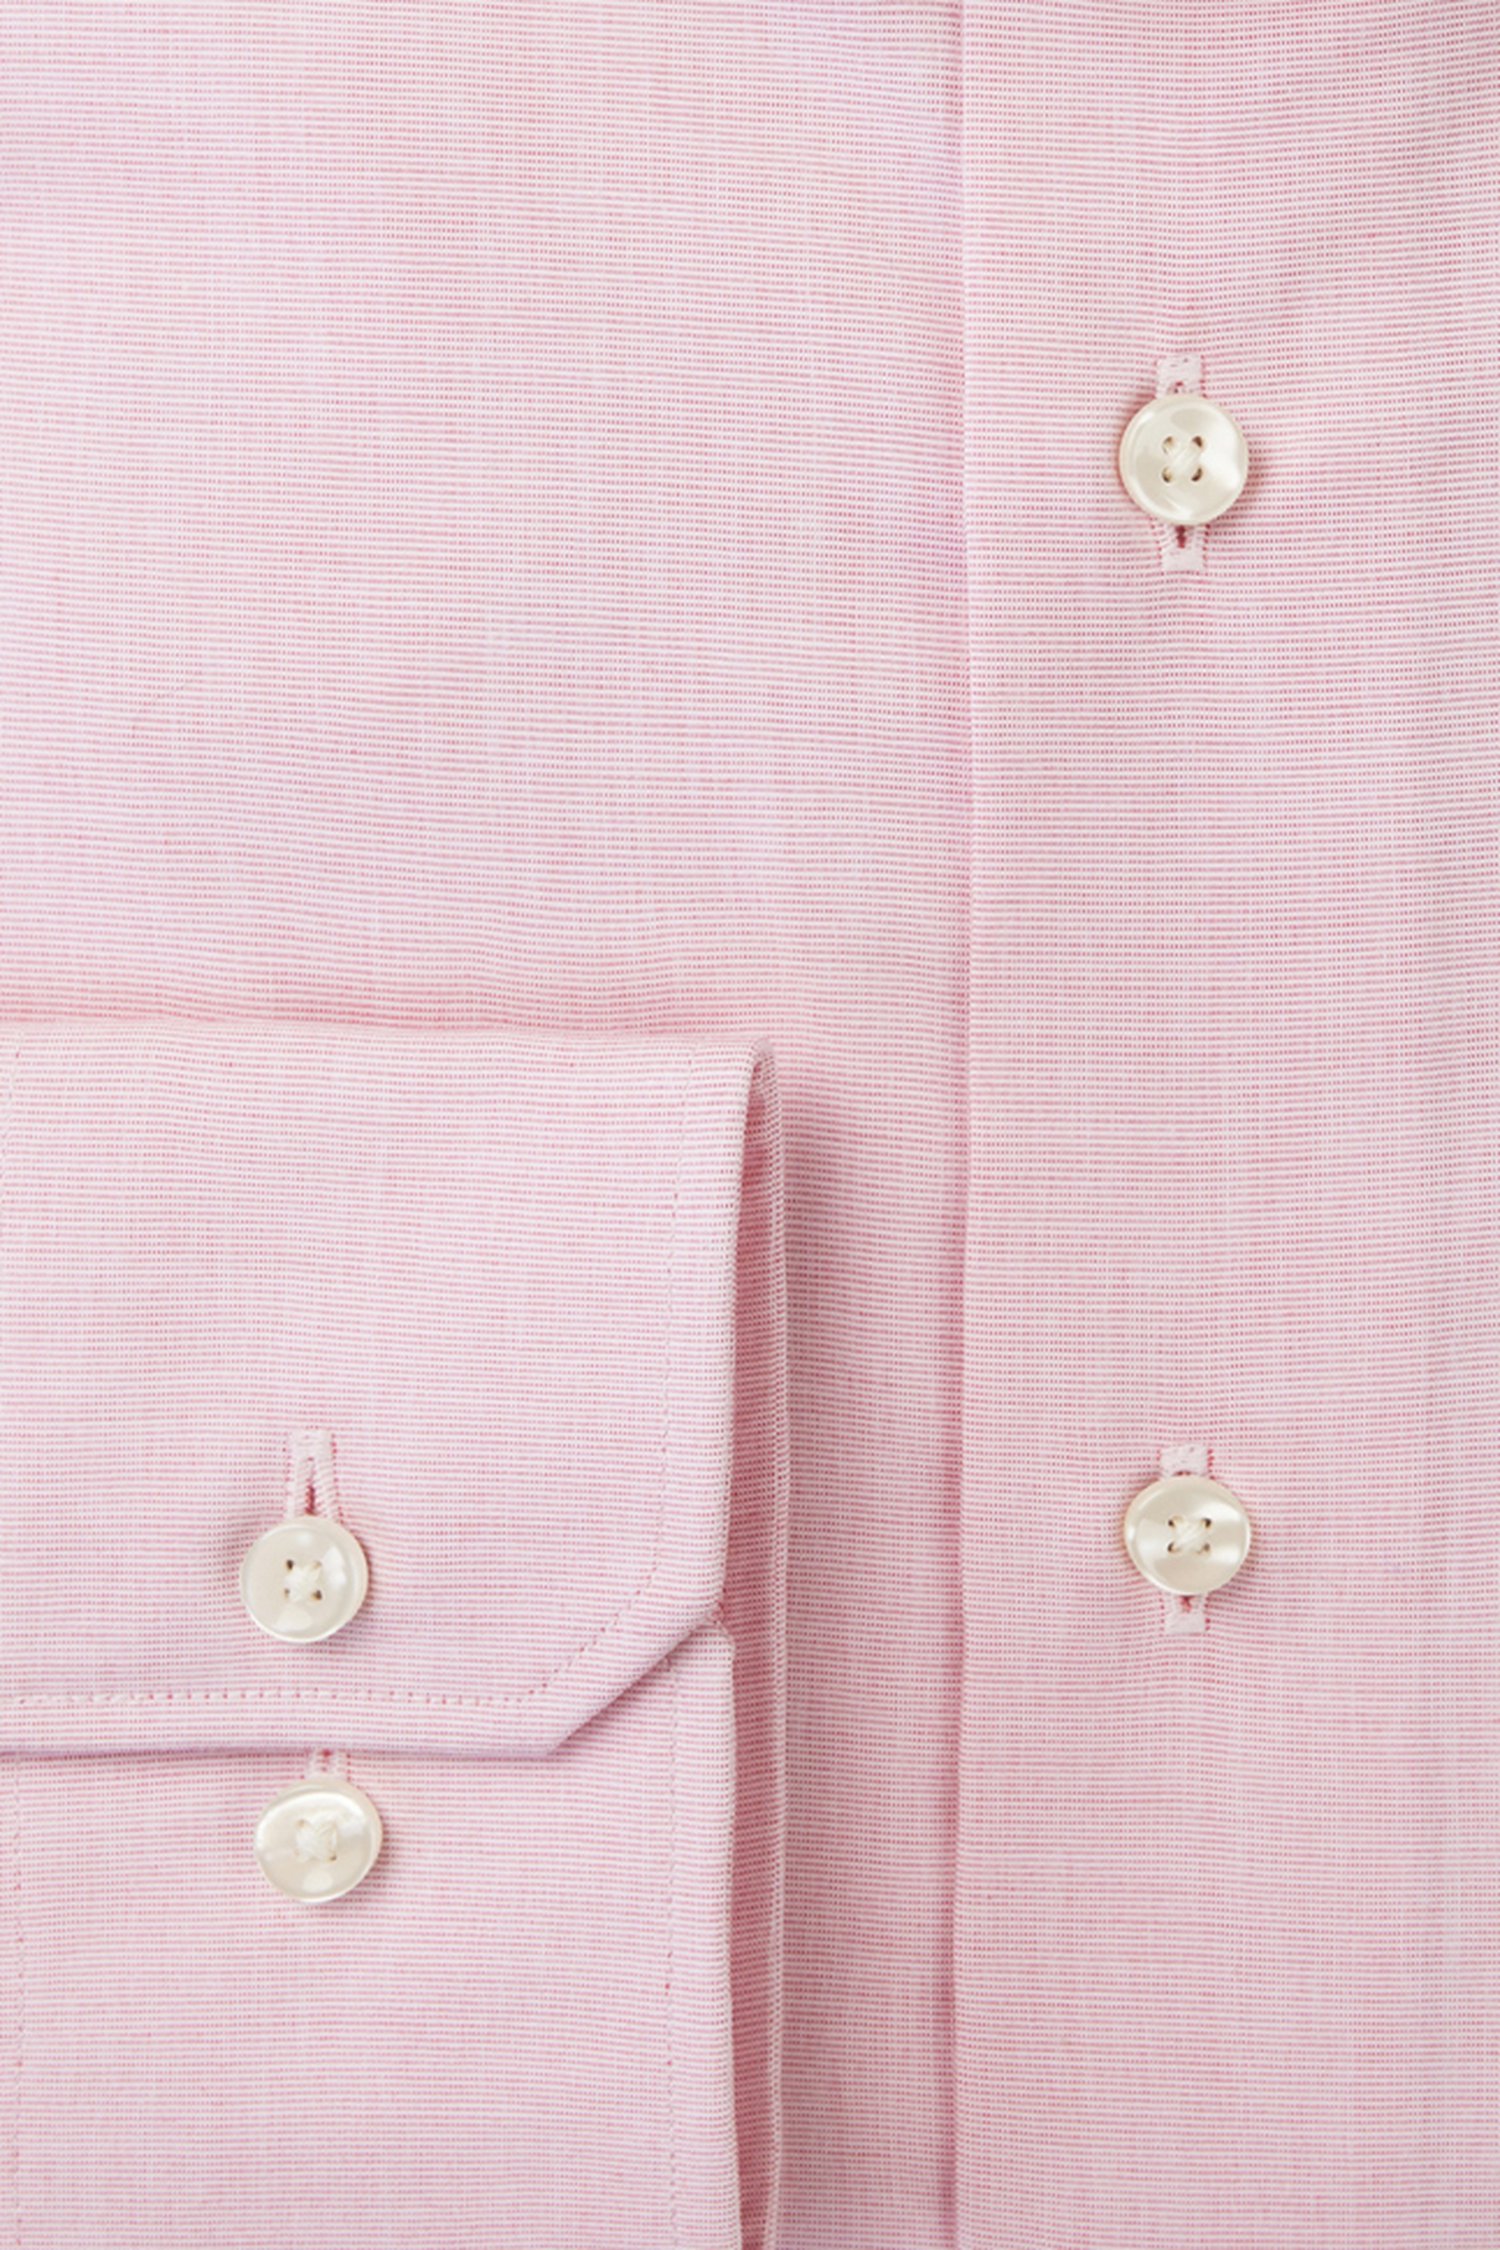 Roze hemd met fijn geruit patroon - Slim fit van Michaelis voor Heren